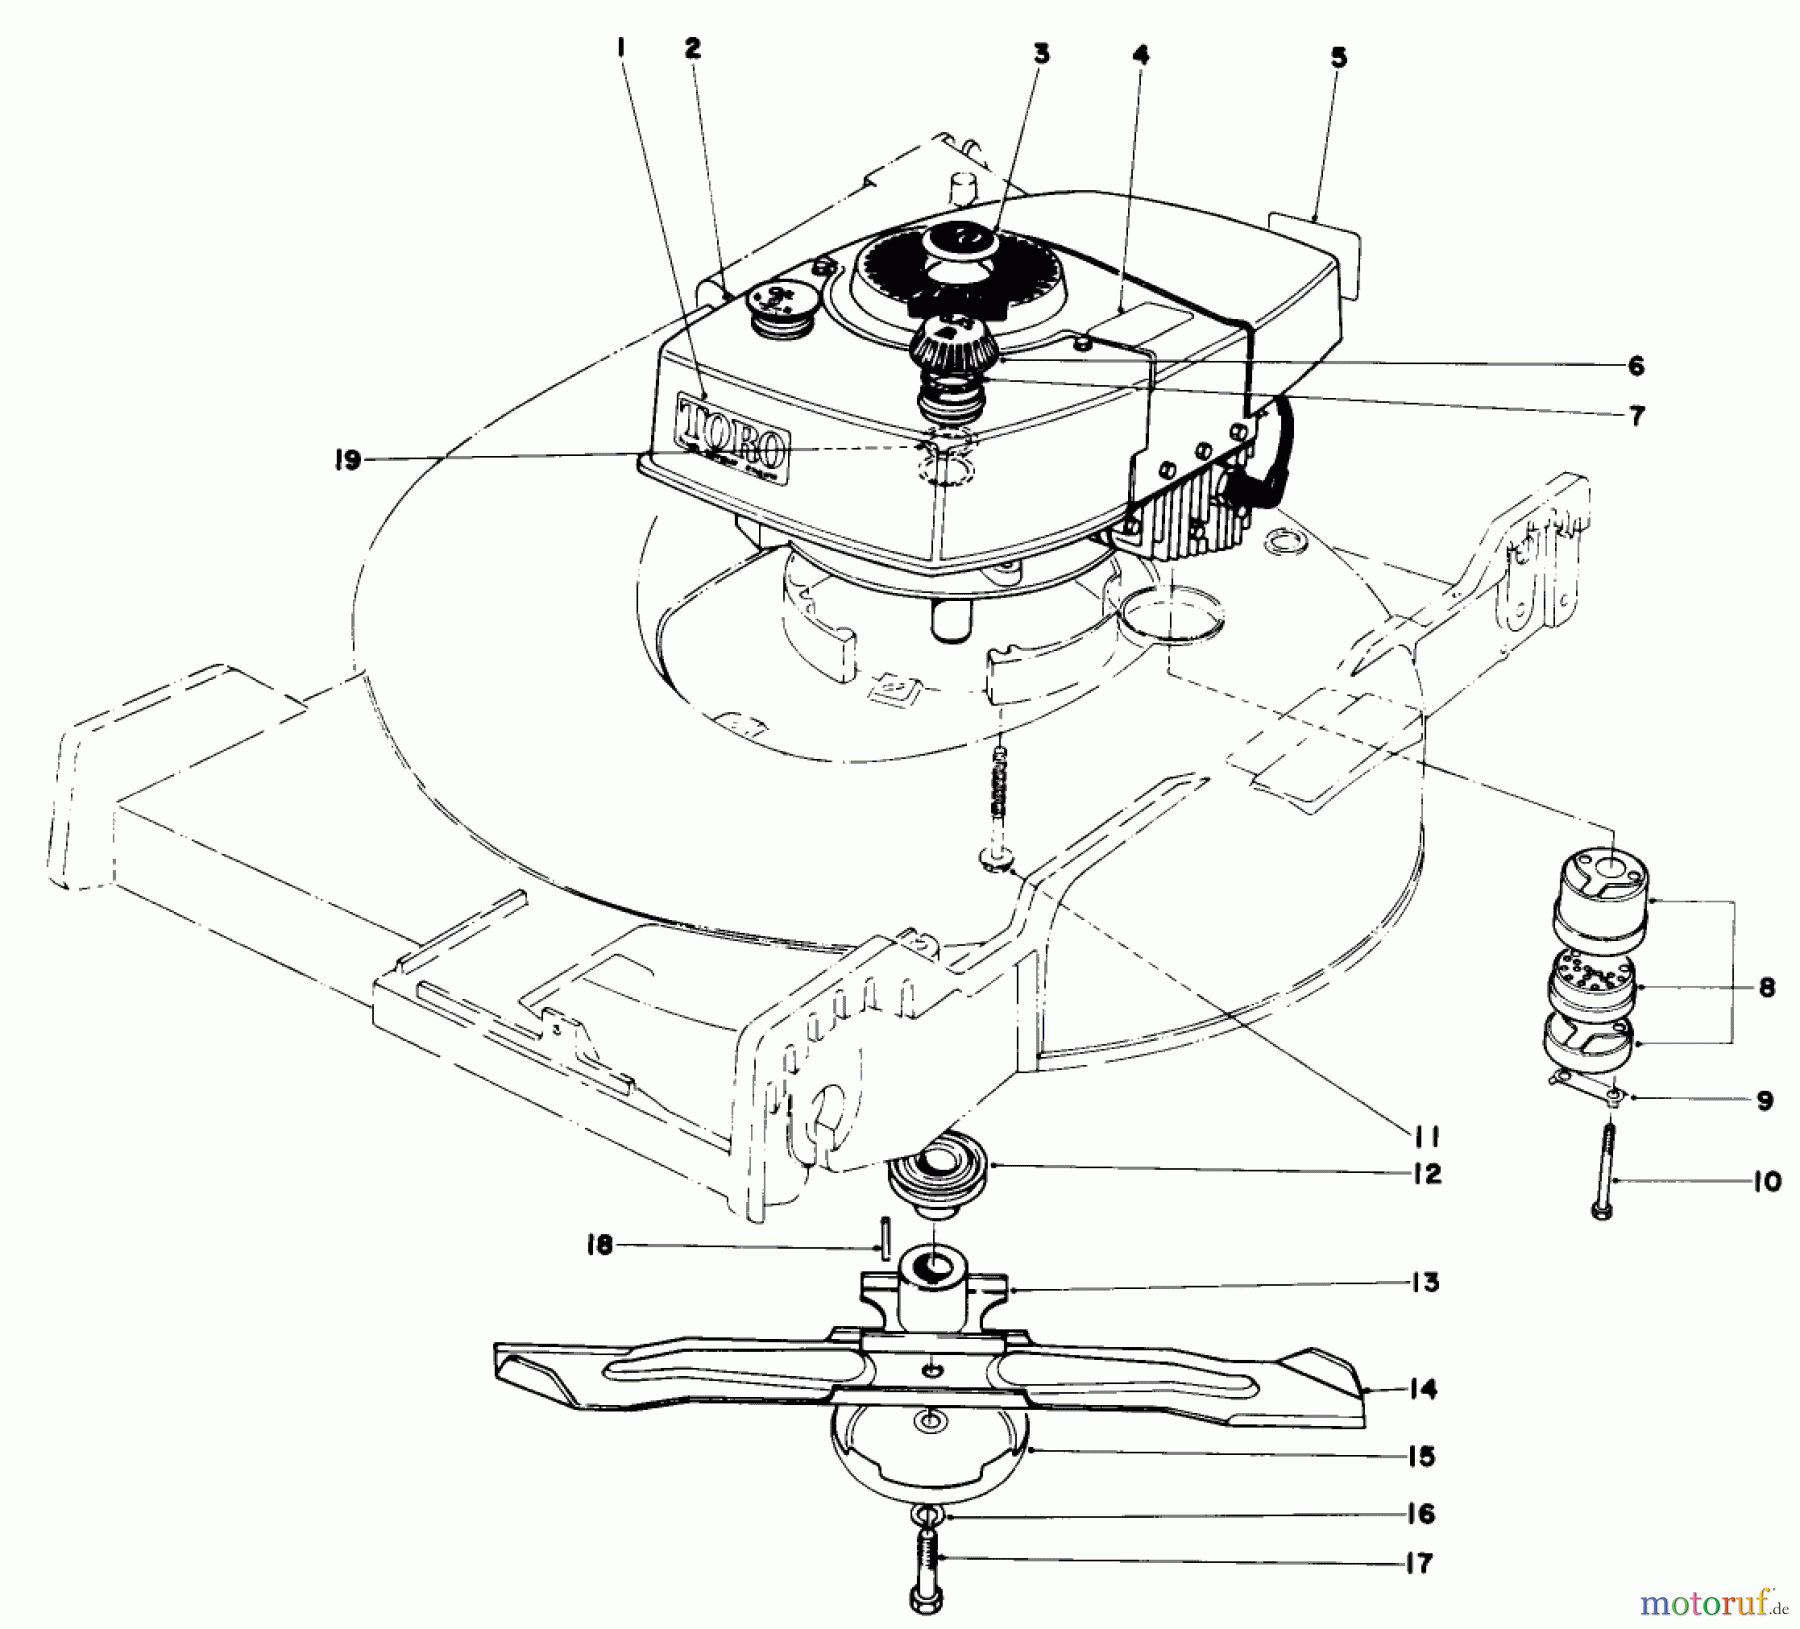  Toro Neu Mowers, Walk-Behind Seite 1 20673 - Toro Lawnmower, 1977 (7000001-7999999) ENGINE ASSEMBLY (MODEL NO. 20562)